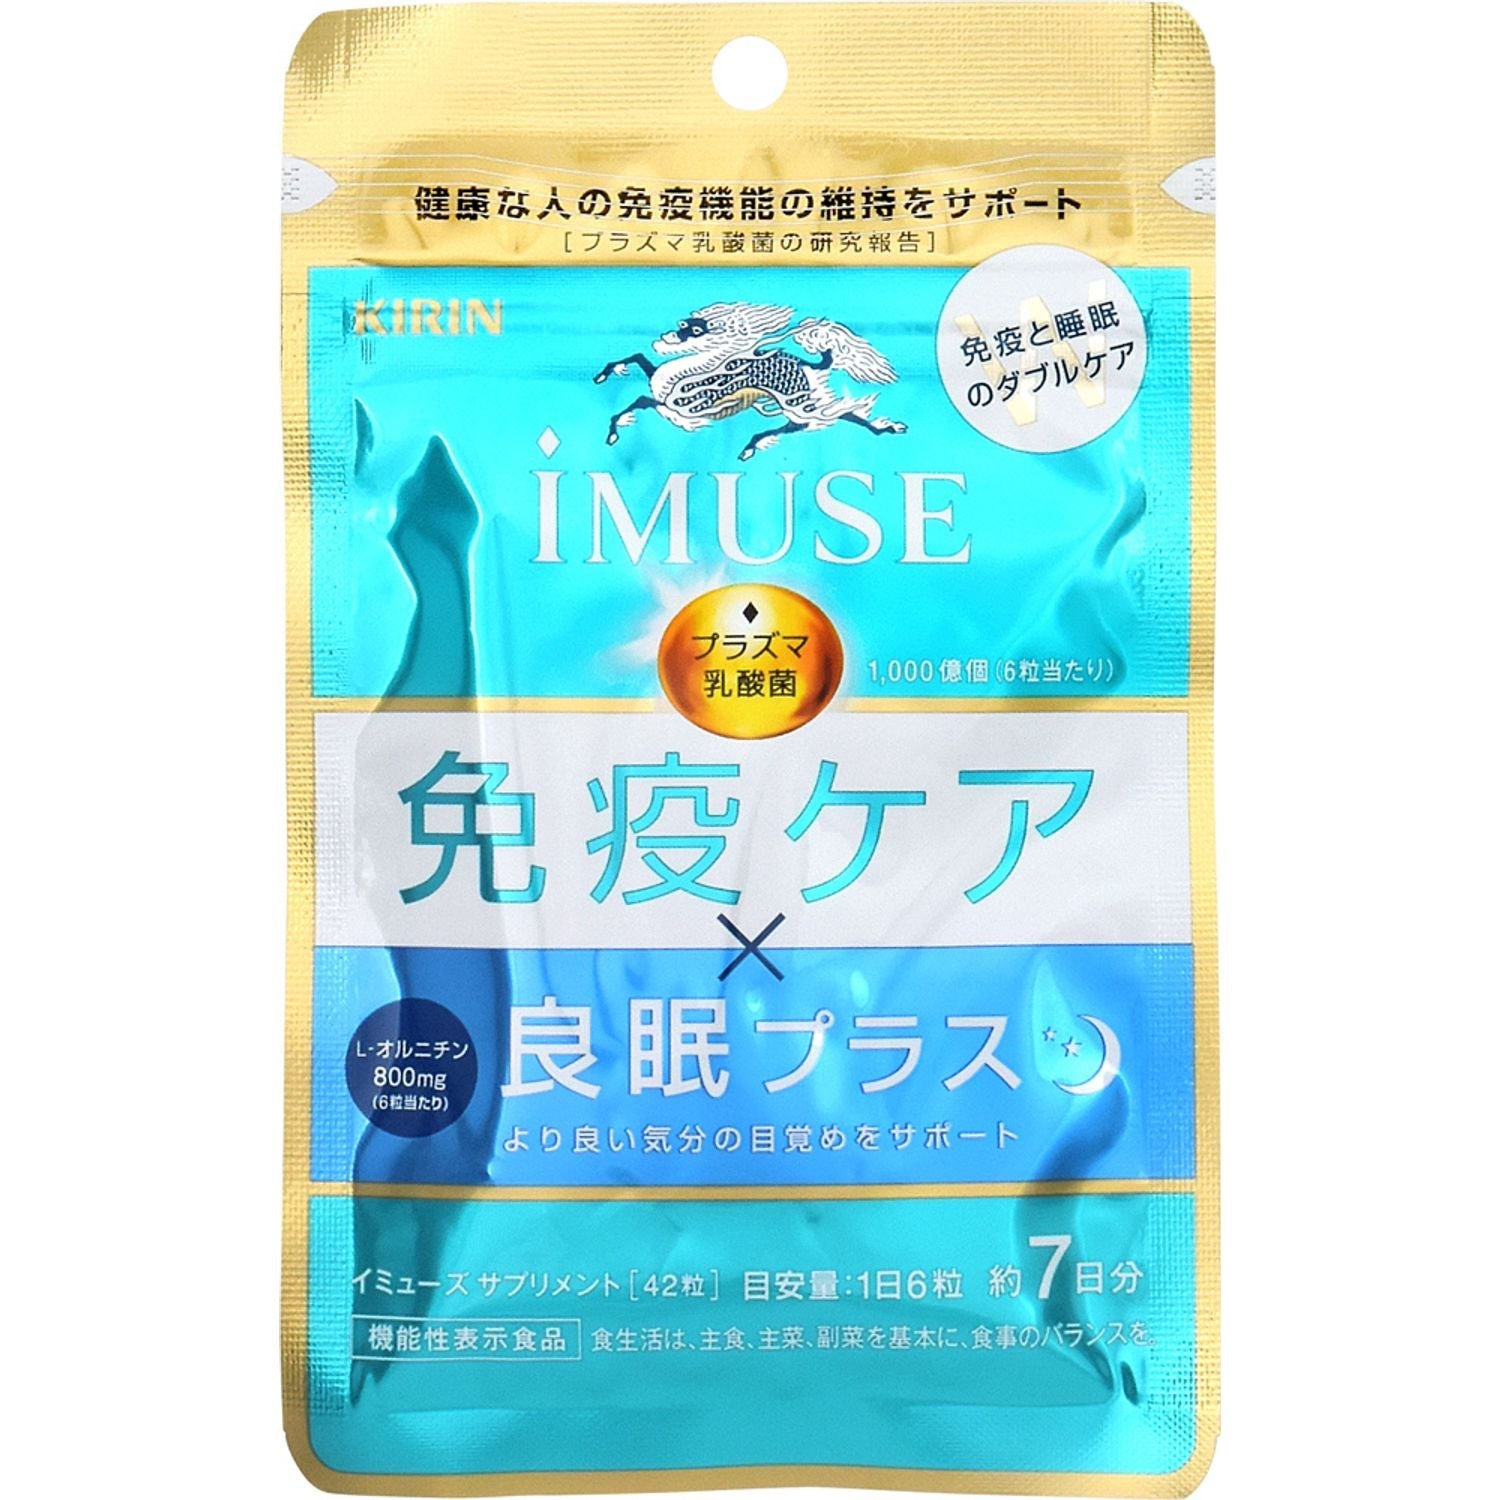 【14袋】キリン iMUSEプラズマ乳酸菌サプリメント 7日分 ( 28粒入 )ビタミン